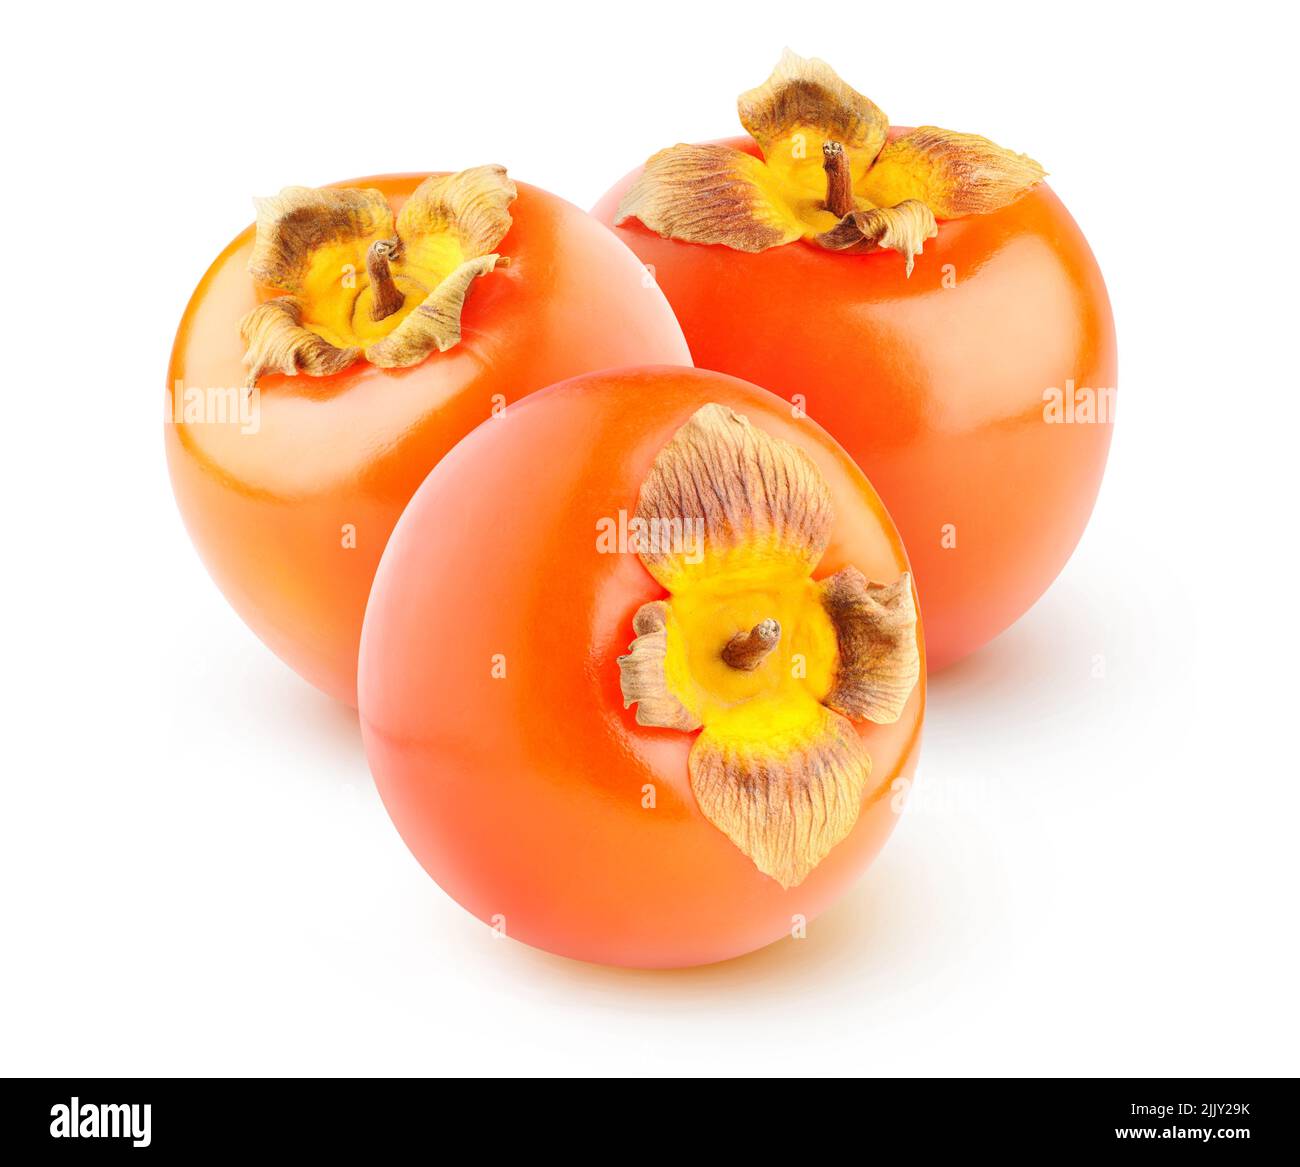 Trois fruits persimmon (kaki) isolés sur fond blanc Banque D'Images